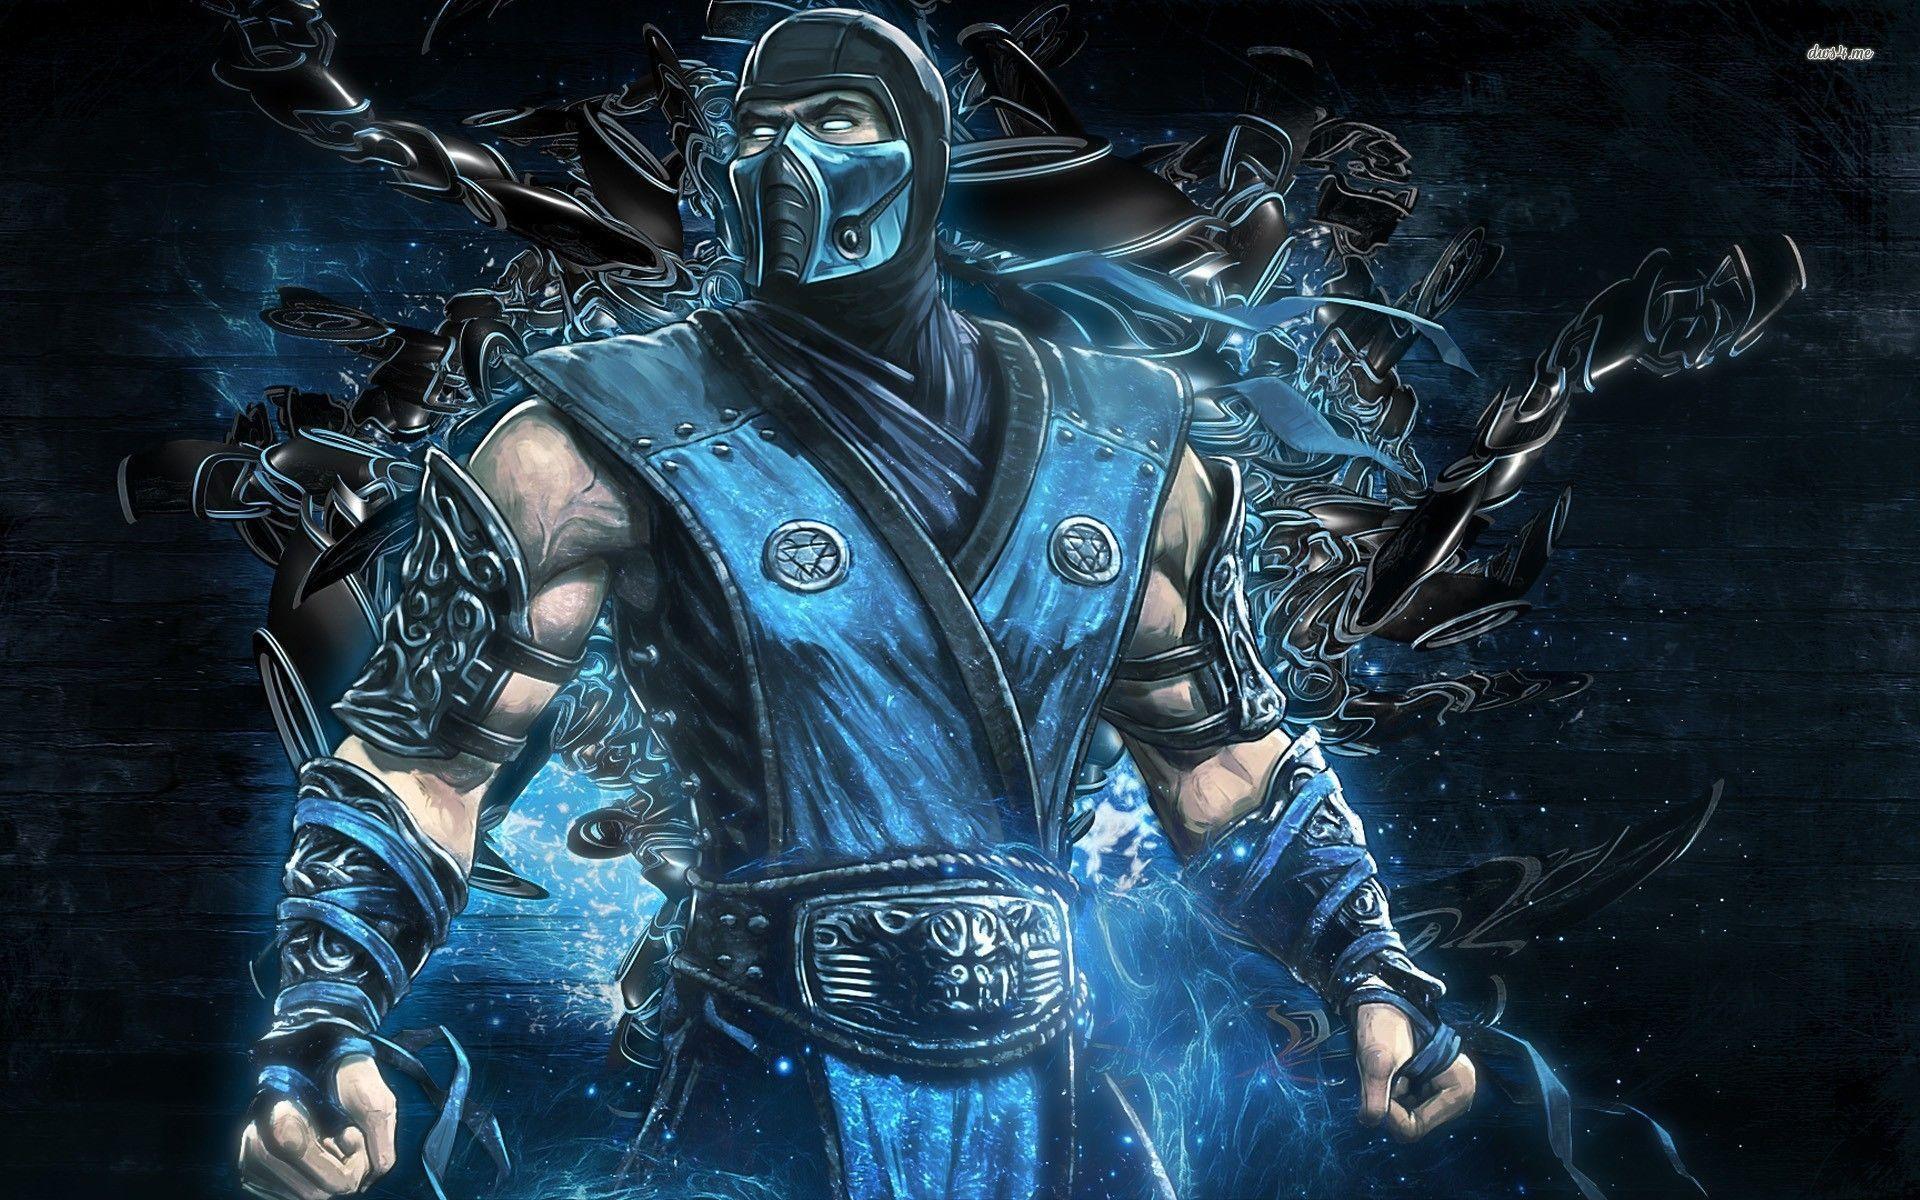 Mortal Kombat XL Wallpapers - Wallpaper Cave